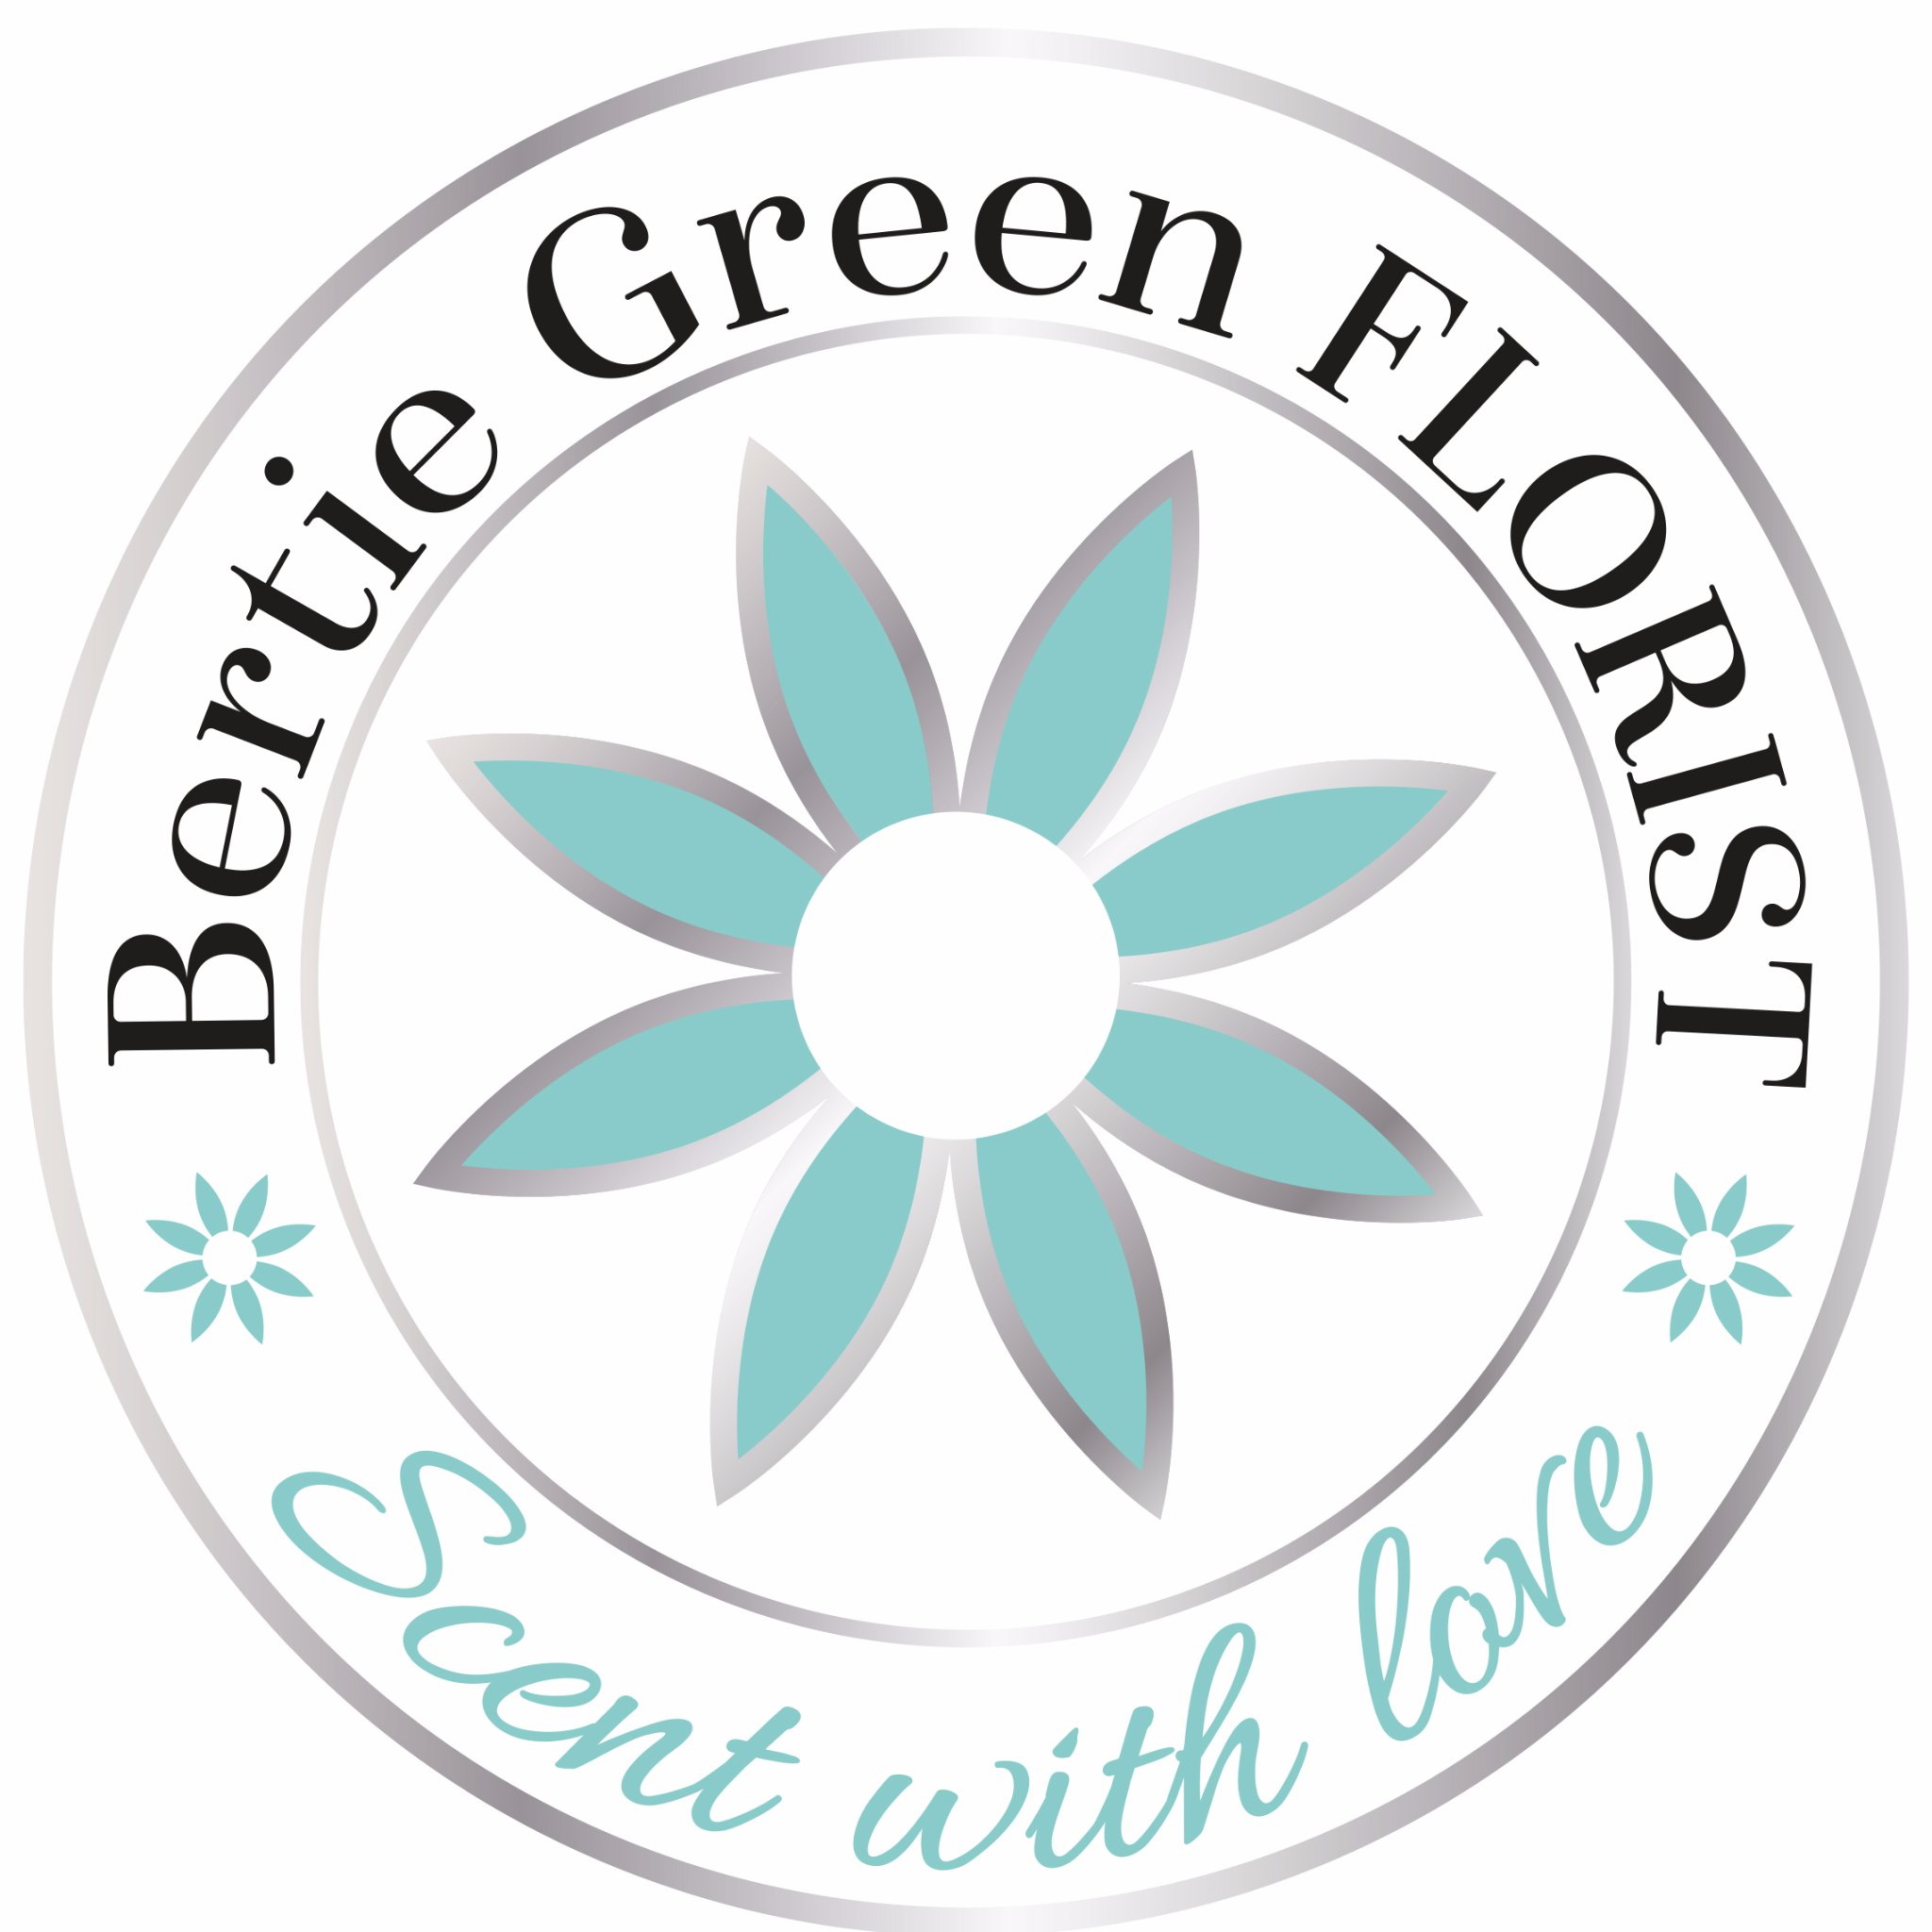 Bertie Green Florist